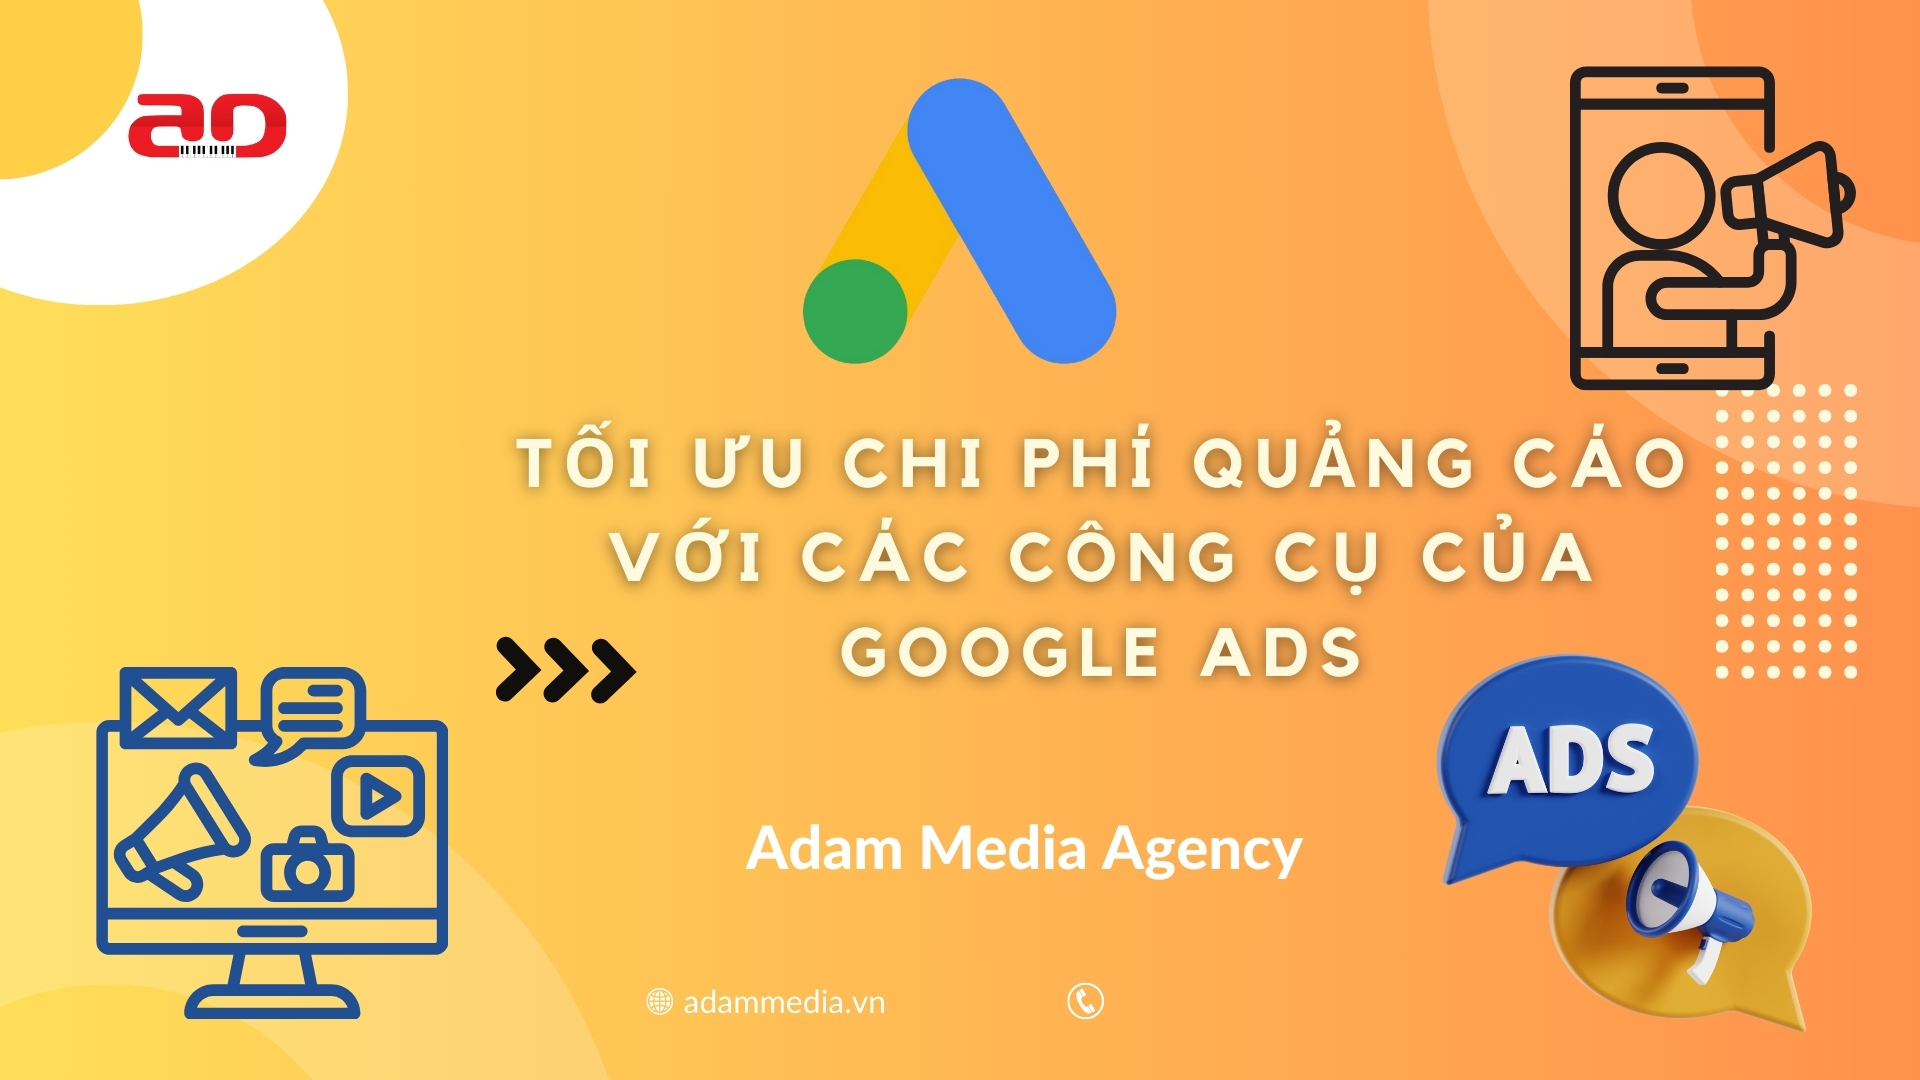 Tối Ưu Chi Phí Quảng Cáo Với Các Công Cụ Của Google Ads